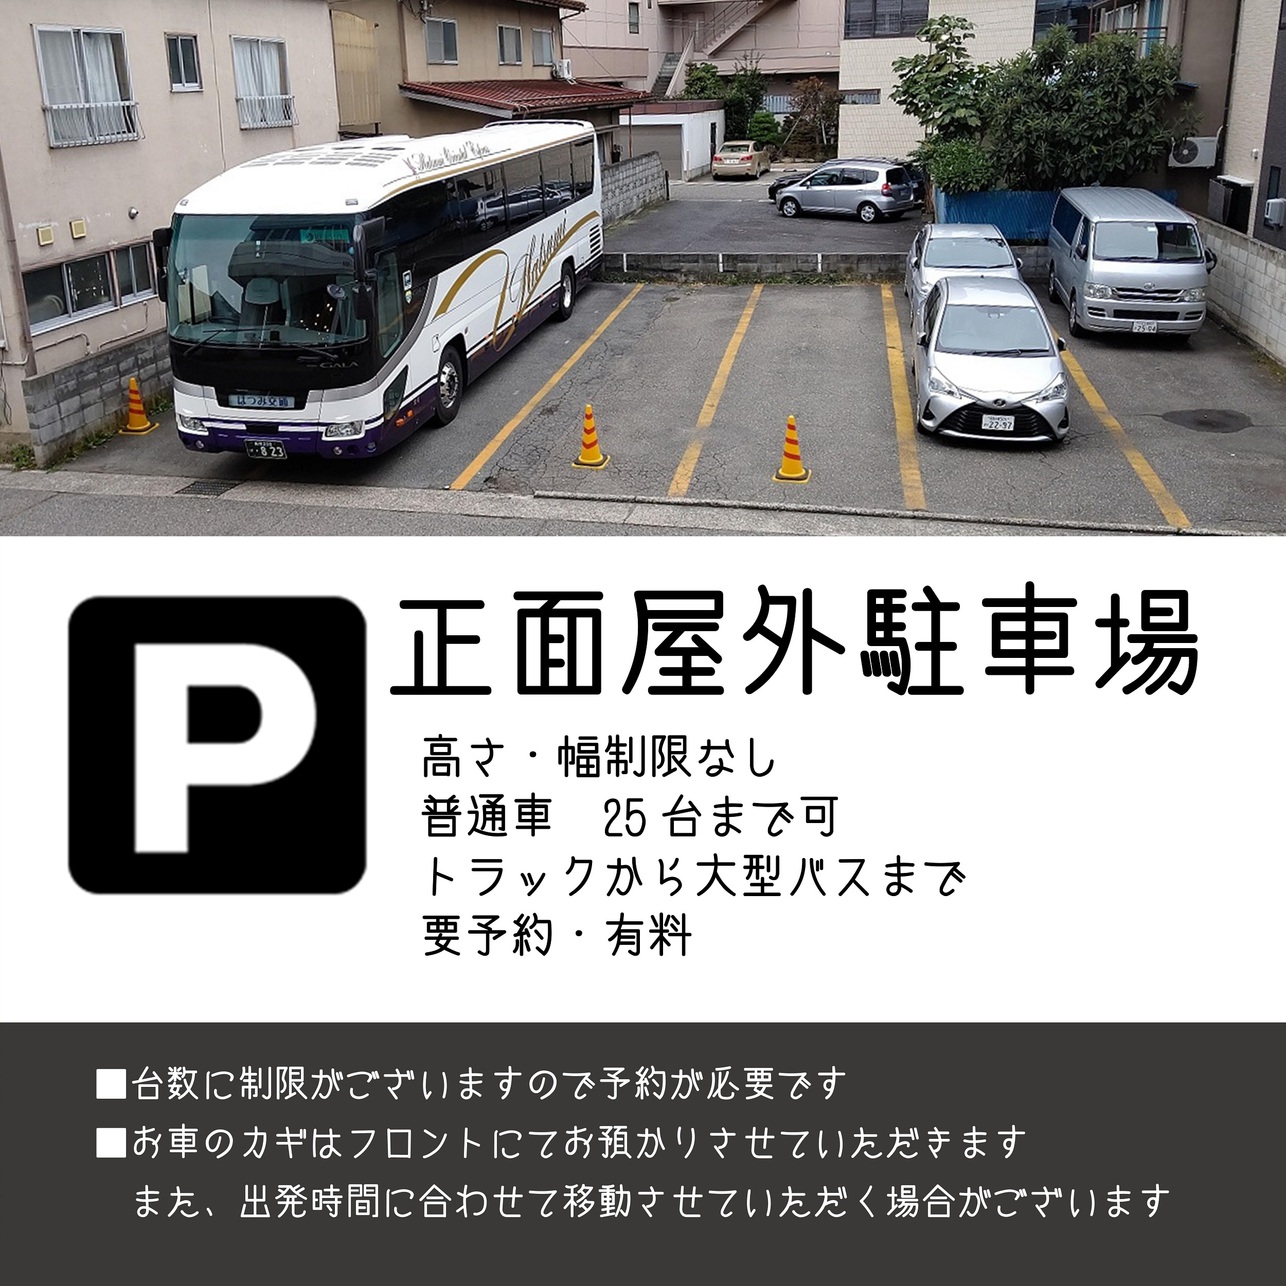 Shiyakusho Mae Nagano Map Directions Navitime Transit